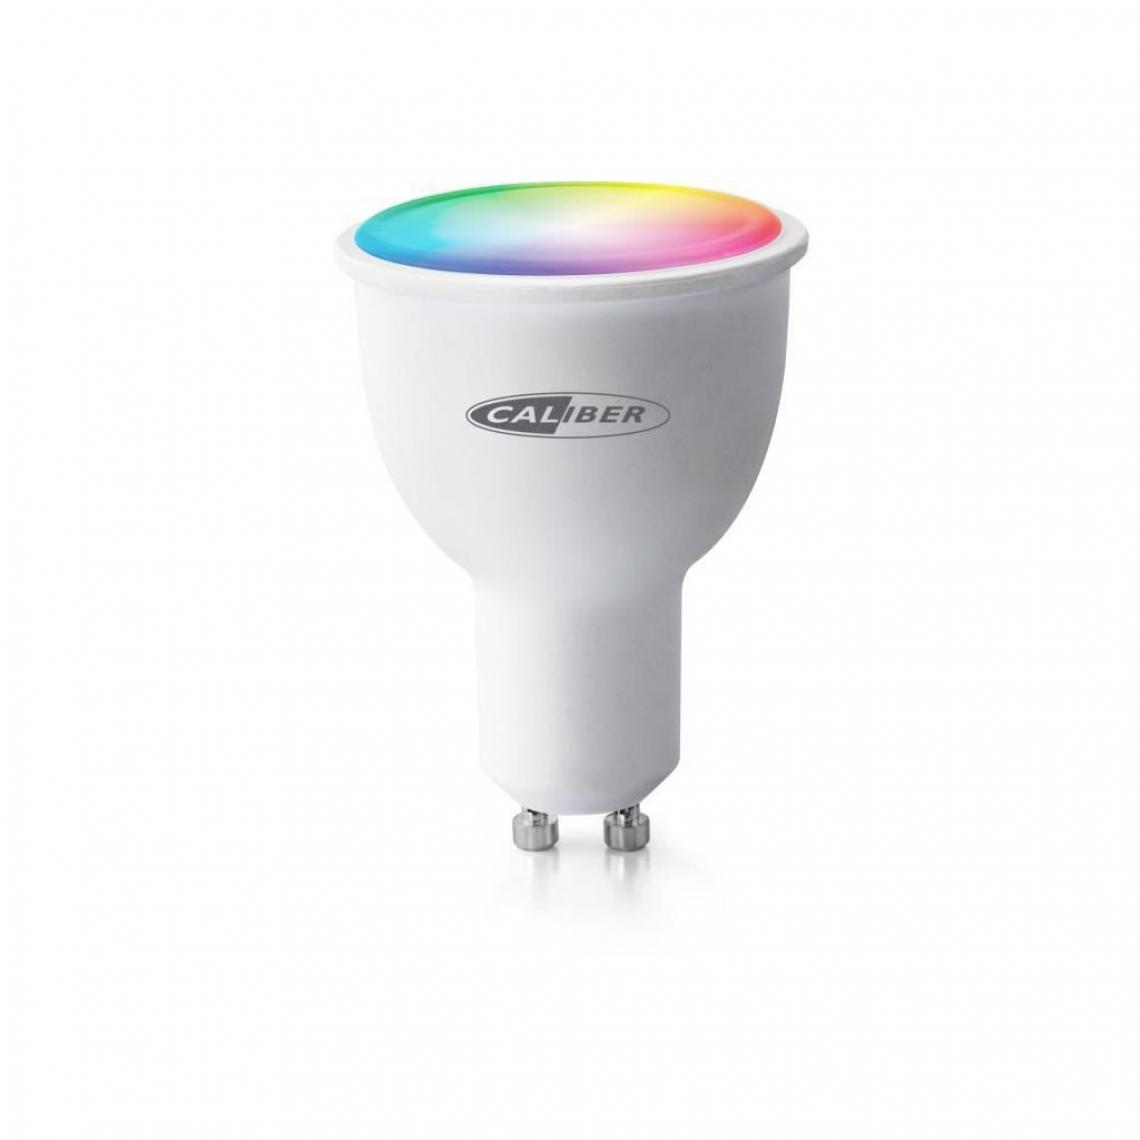 Caliber - CALIBER HWL5101 Ampoule LED intelligente GU10 blanc froid a blanc chaud et RGB multicolore contrôlée par App. - Ampoules LED